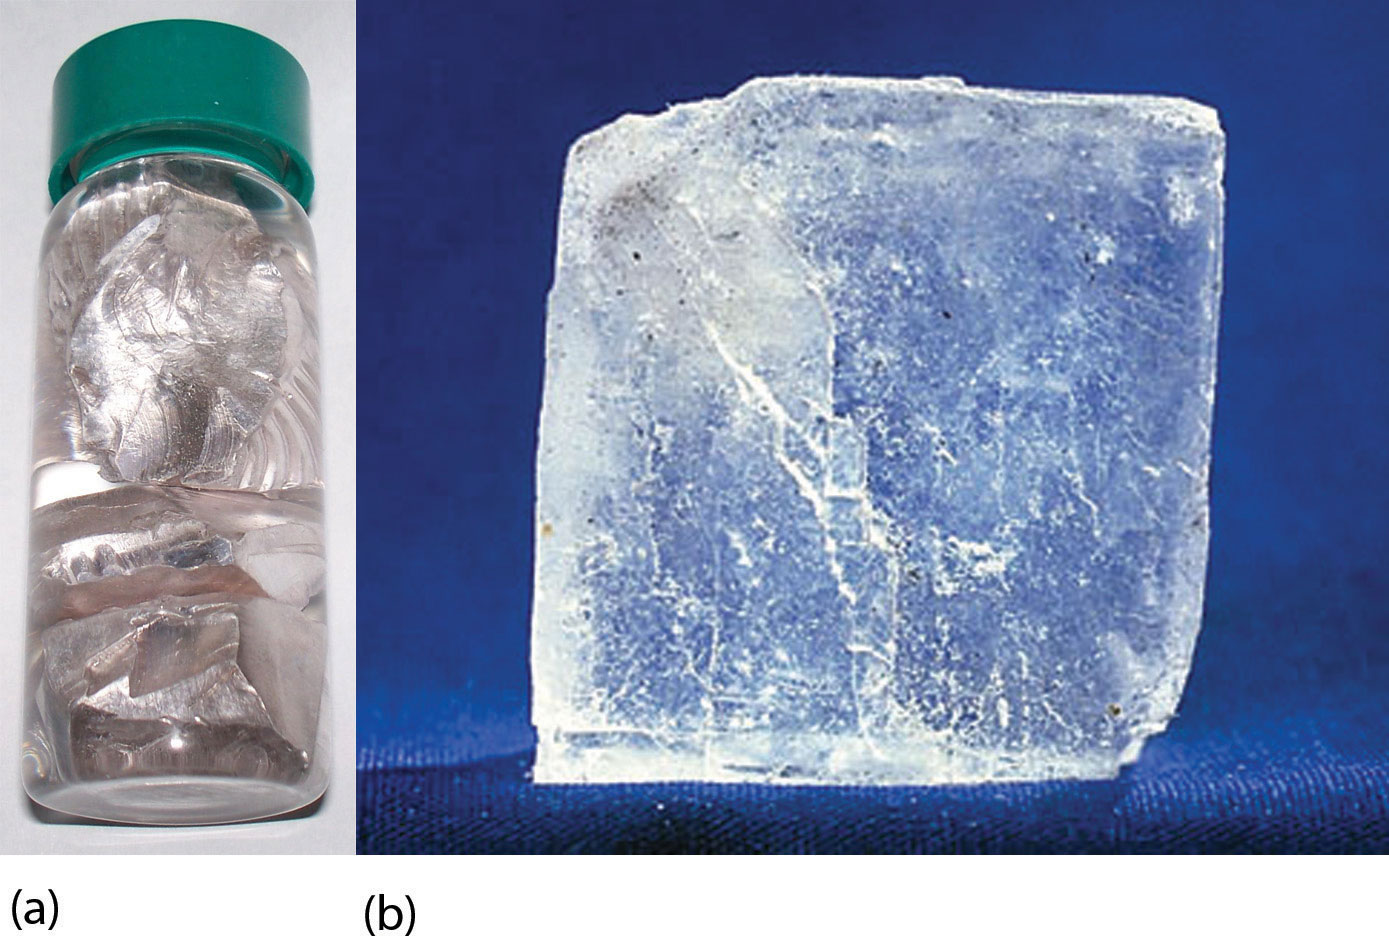 El metal de sodio se muestra en un pequeño recipiente de vidrio con tapa verde. Junto a la botella, se muestra un cristal de sal magnificado.